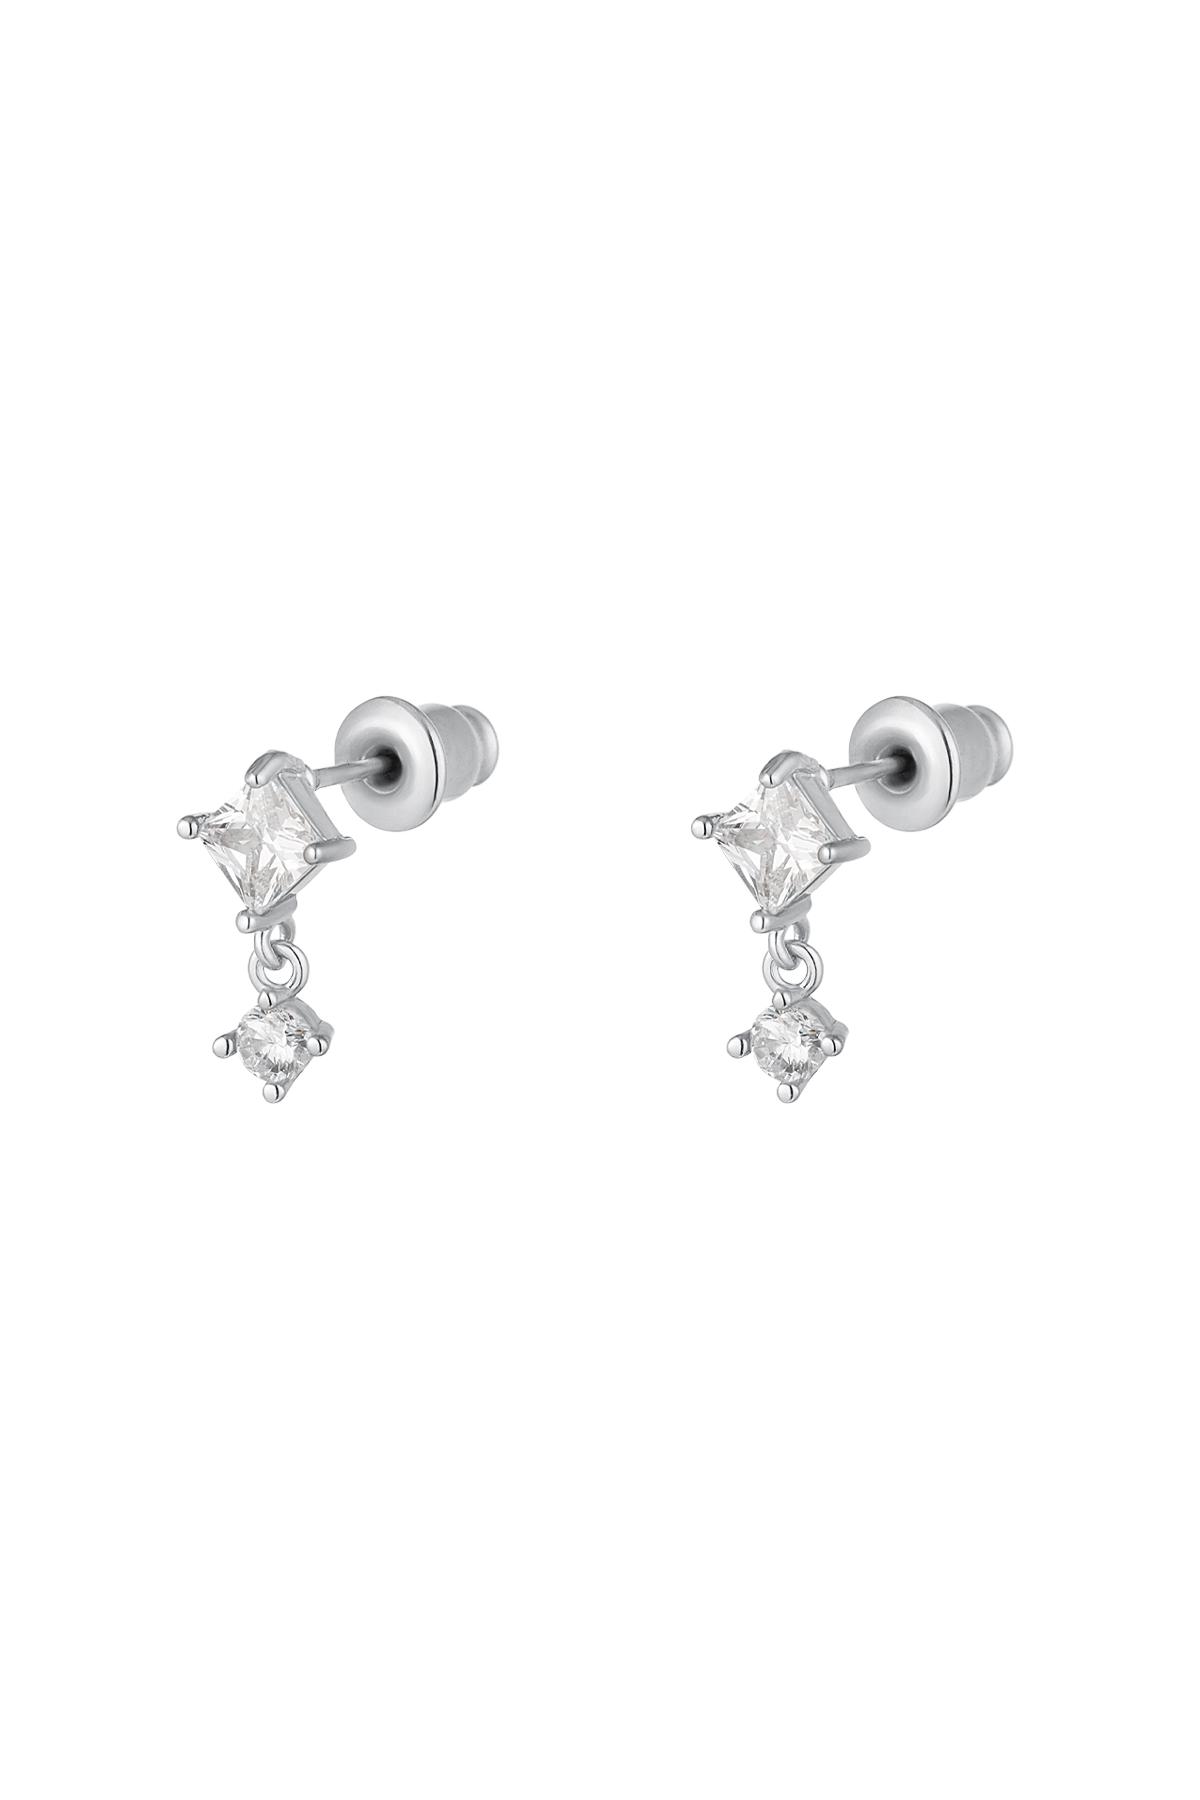 Ohrringe mit farbigen Steinen - Kollektion Sparkle Silber Kupfer h5 